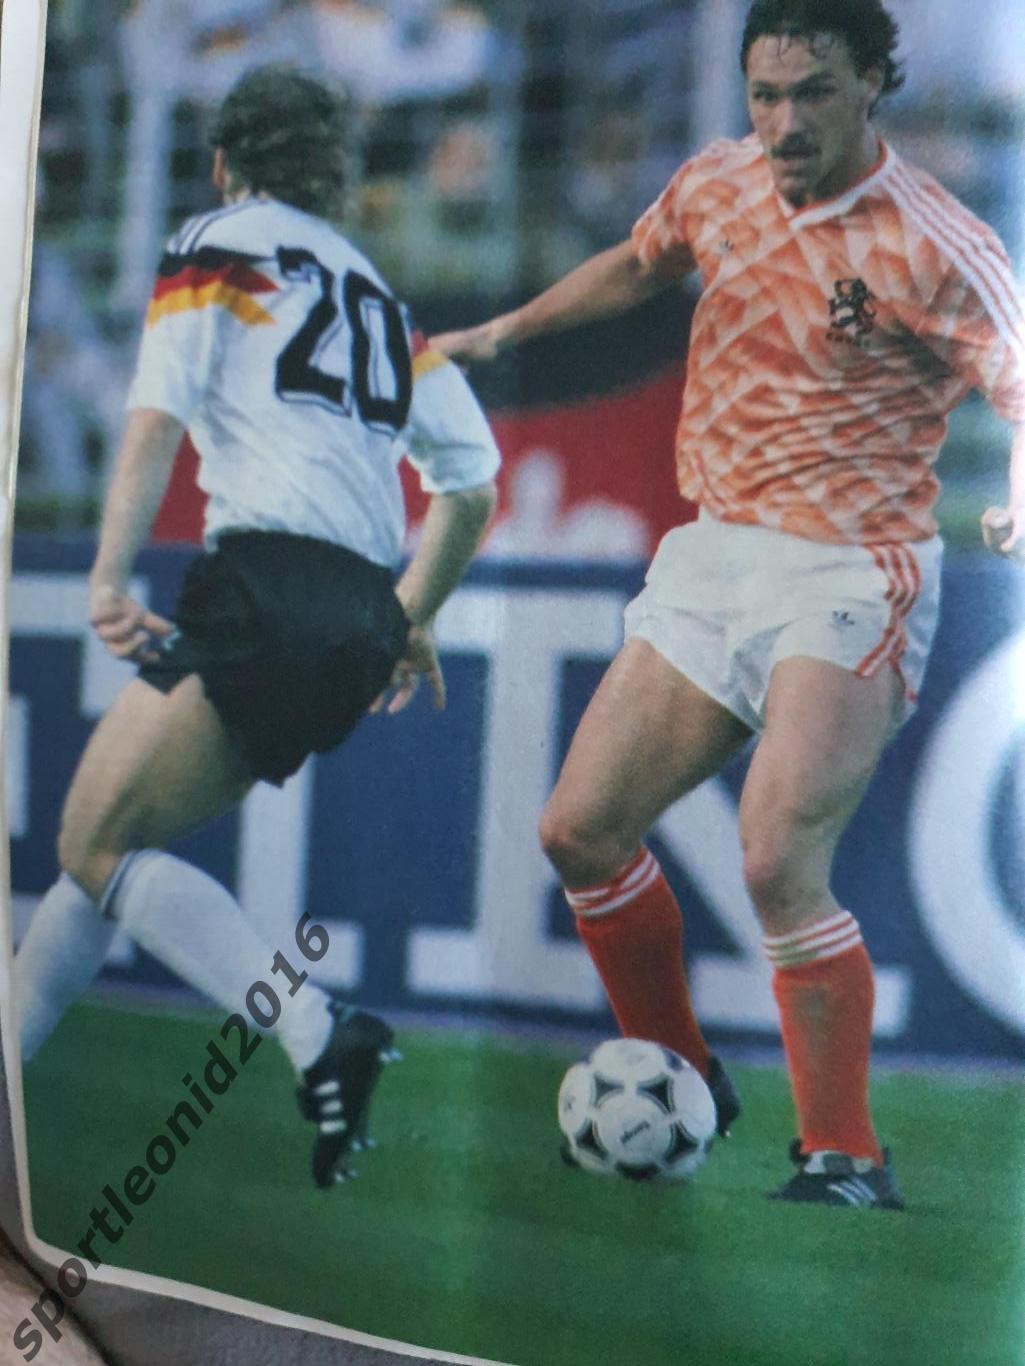 Voetbal International 1988.Годовая подписка.52 номера+4 спецвыпуска к Евро-88.10 7